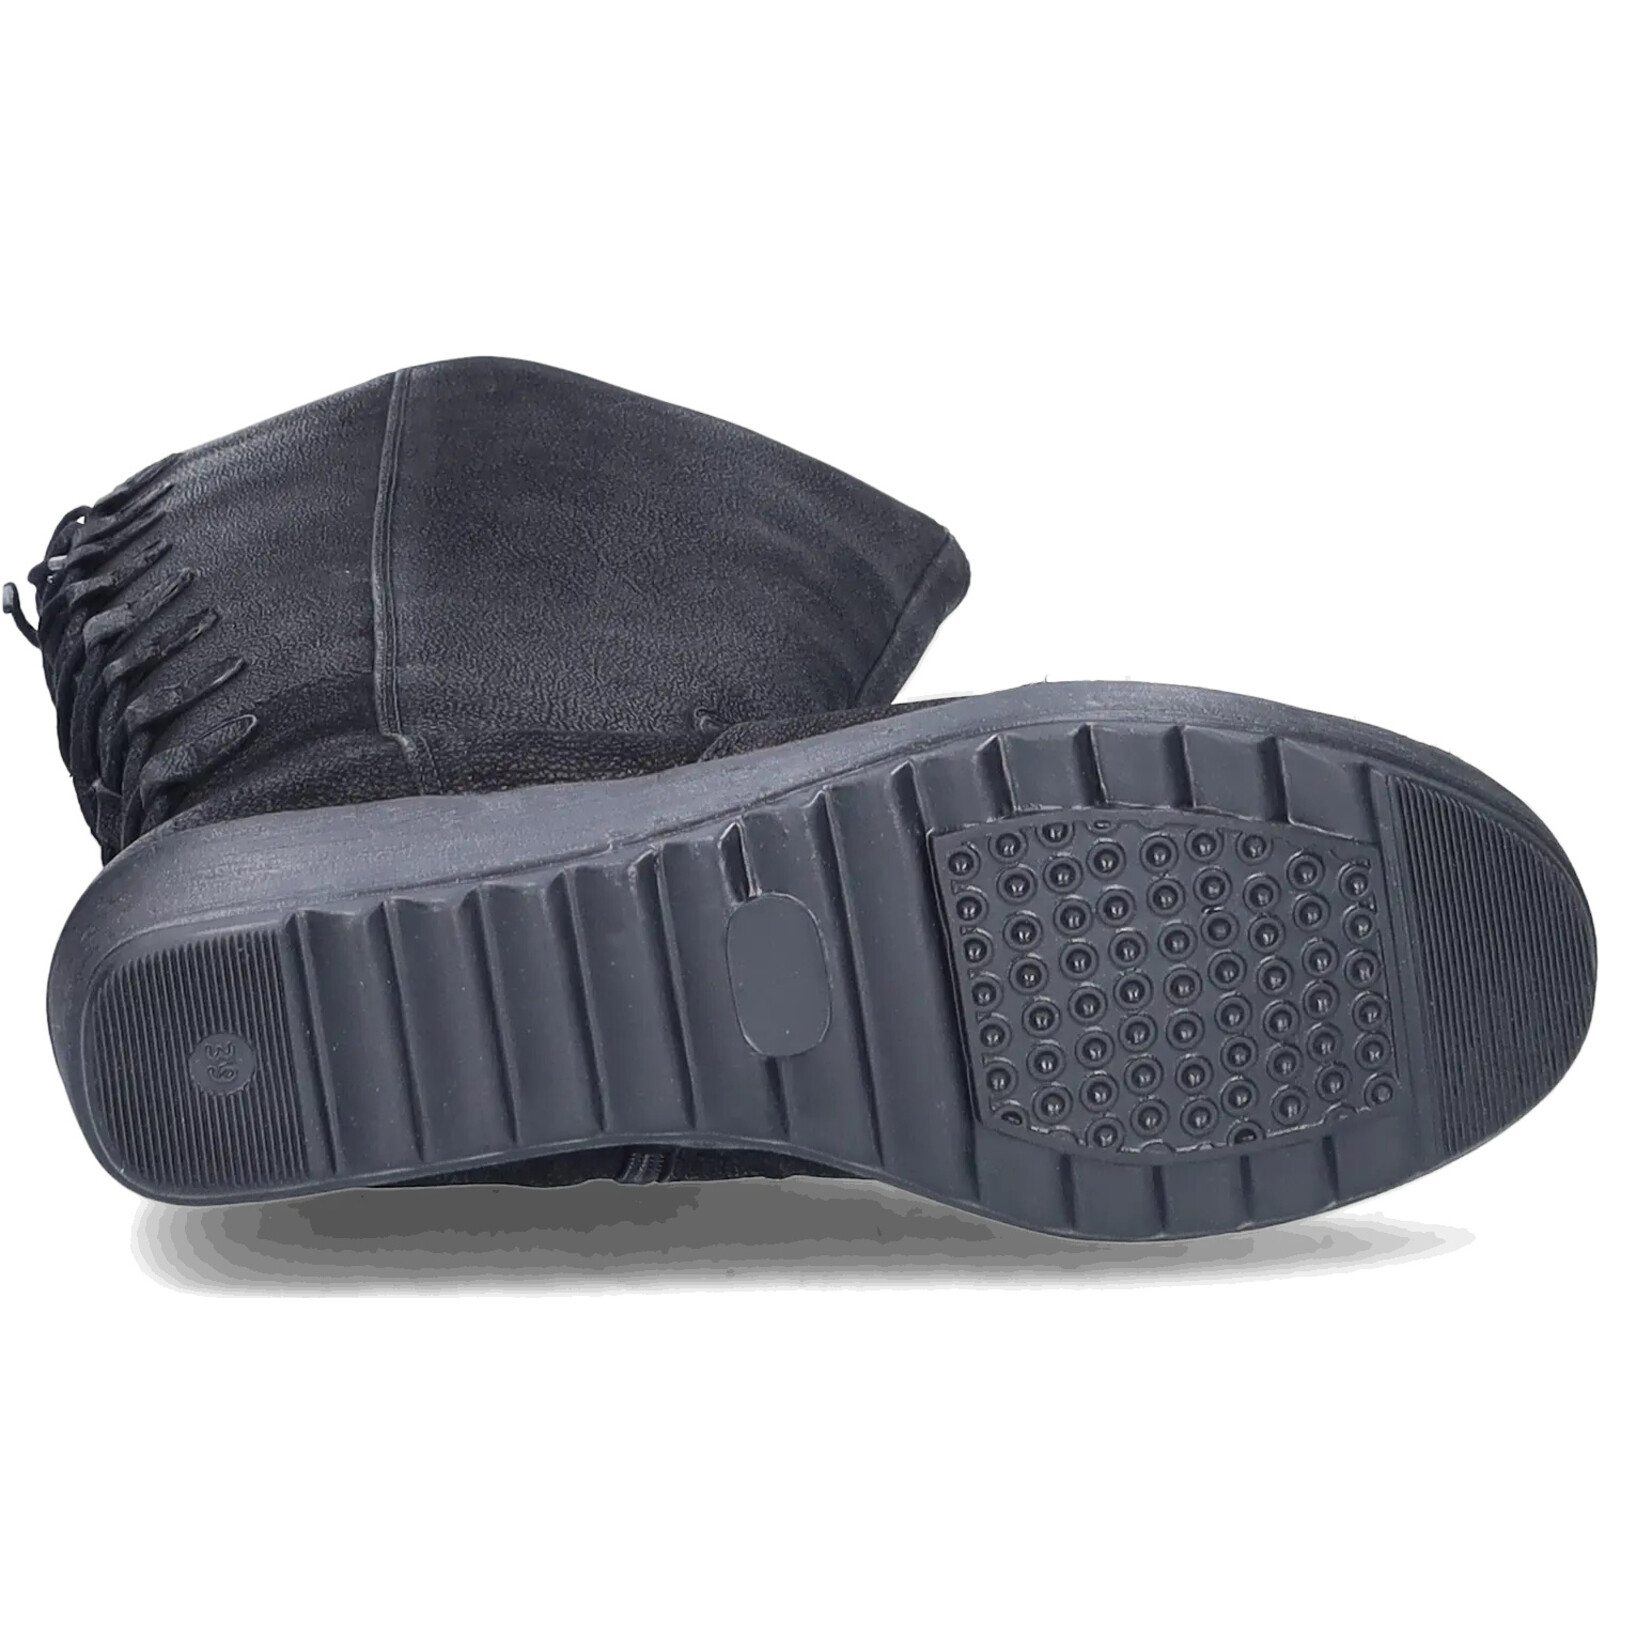 JJ Footwear Akins - Zwart